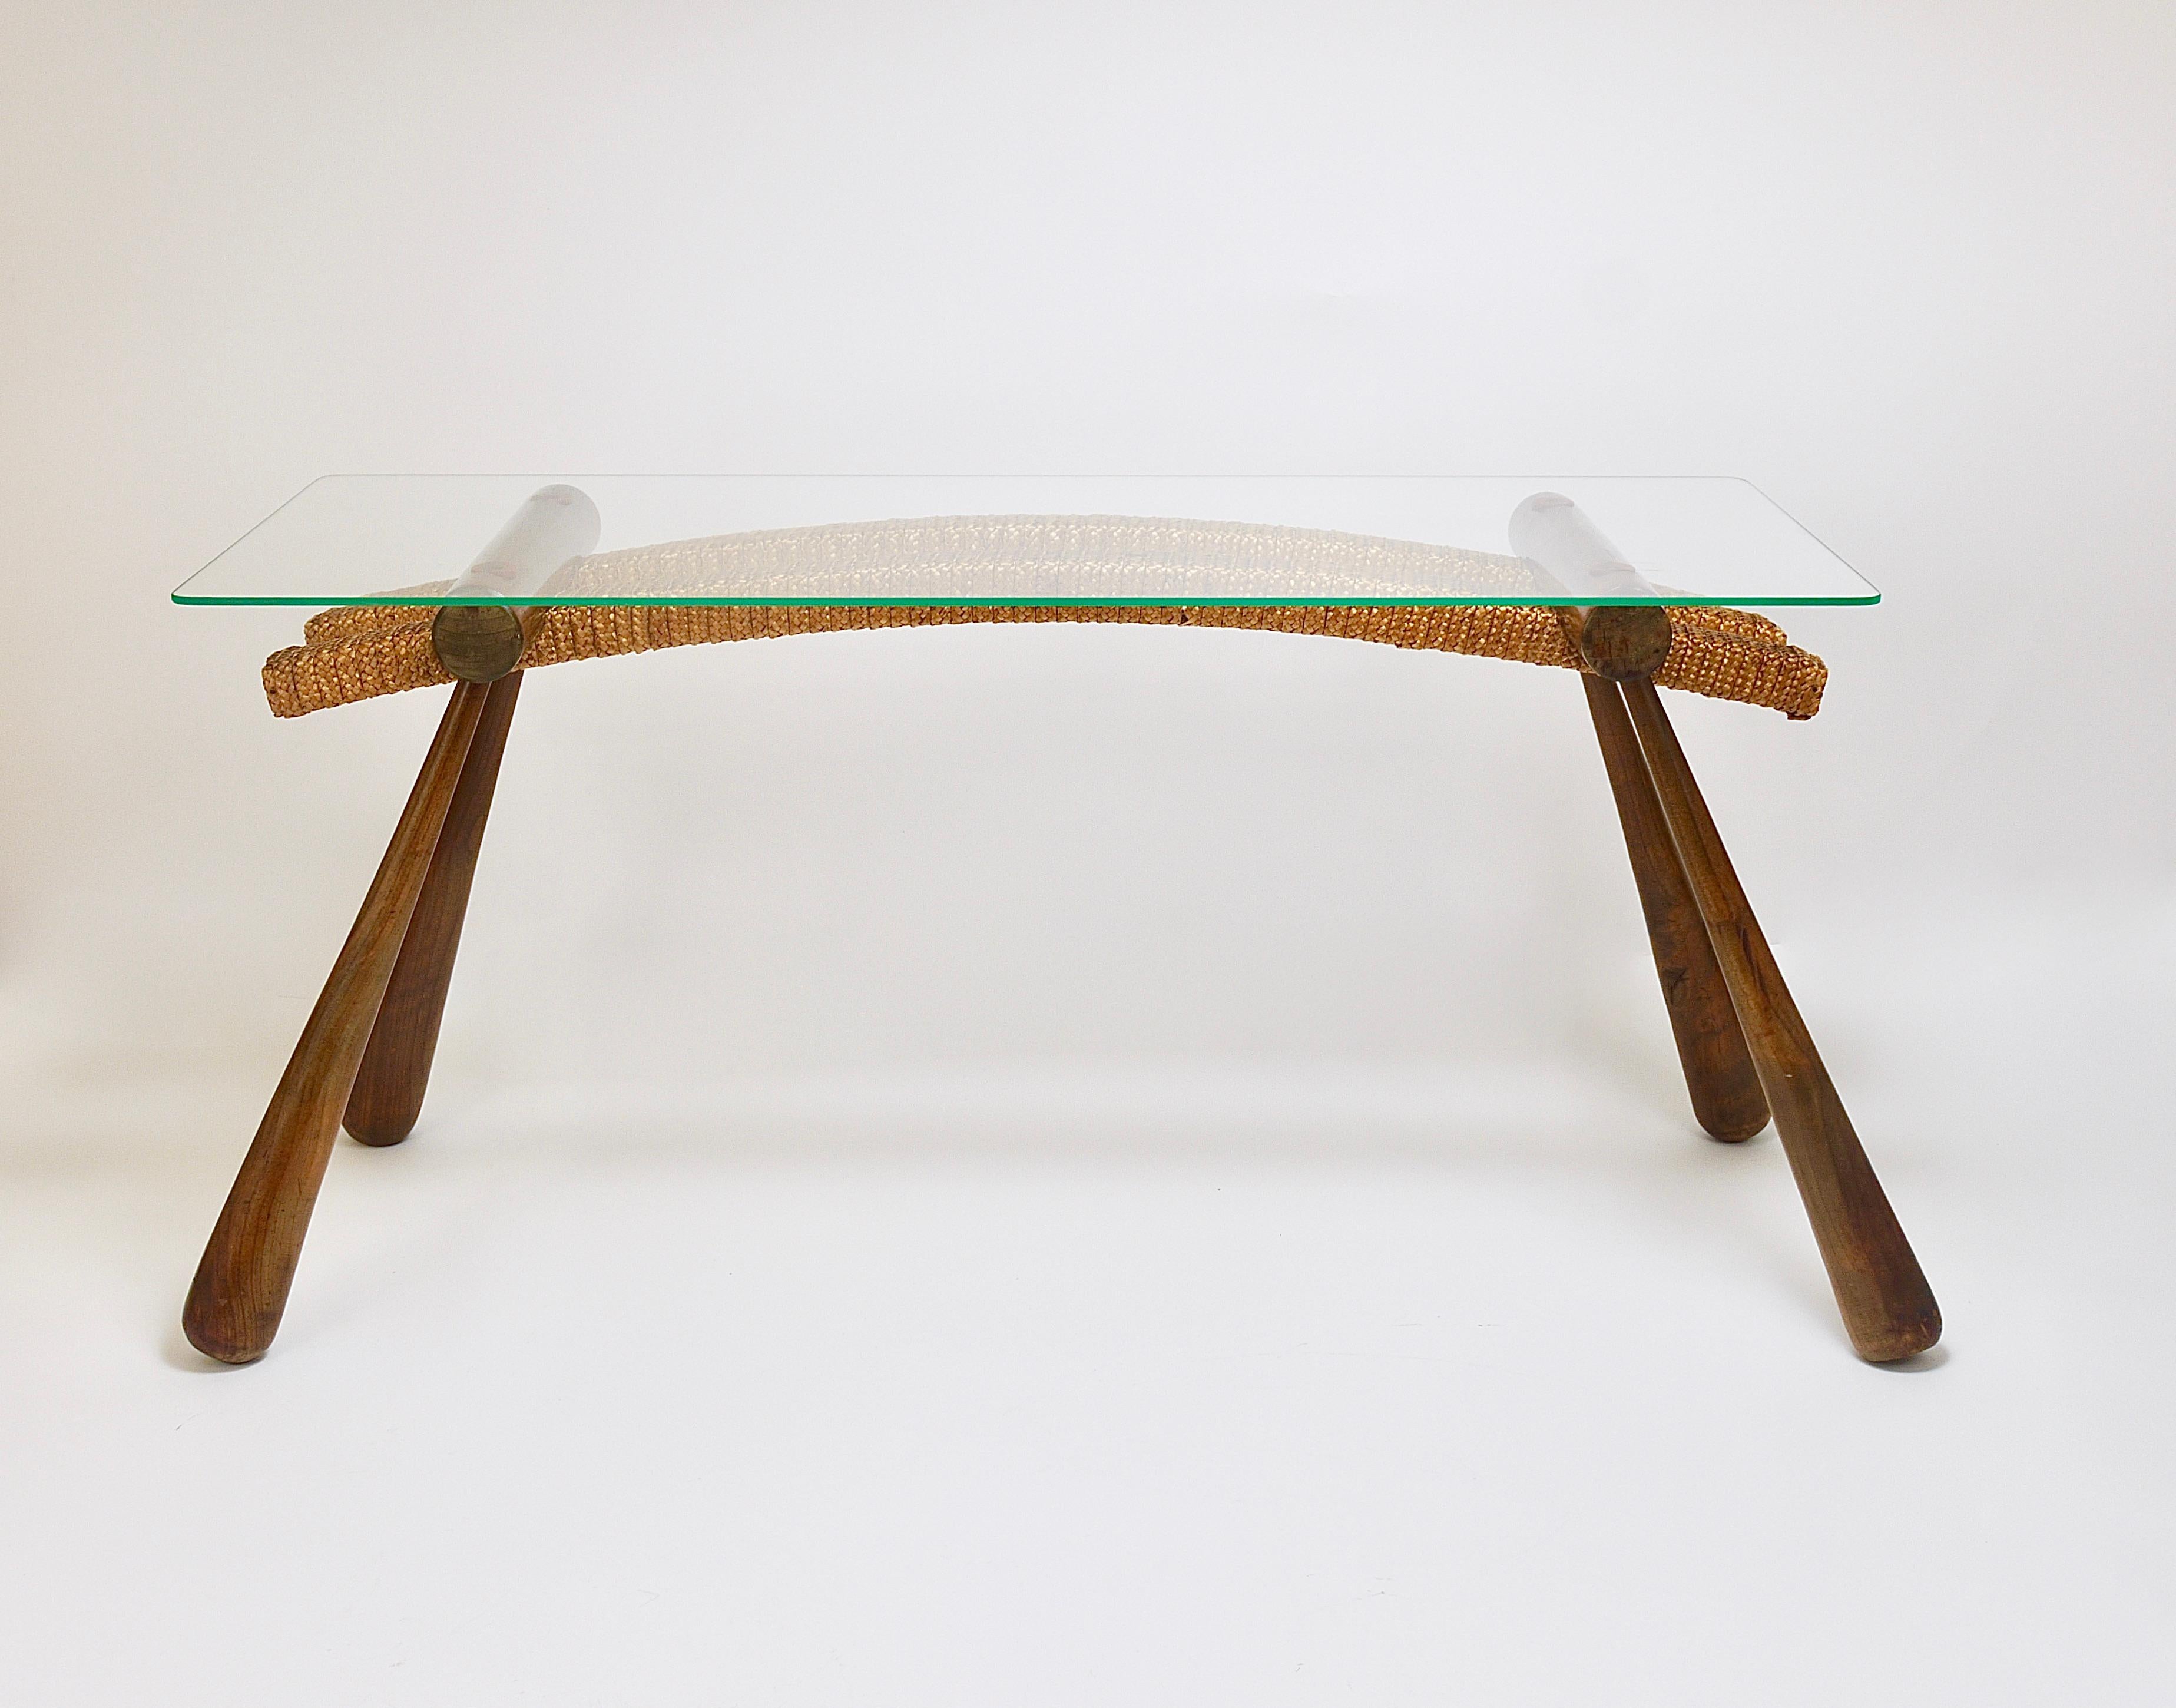 Une table moderniste autrichienne organique d'inspiration japonaise très recommandée. Une pièce élégante, à utiliser comme table d'appoint / table basse / table d'extrémité ou table d'appoint. Également utilisable comme banc ou support à fleurs.